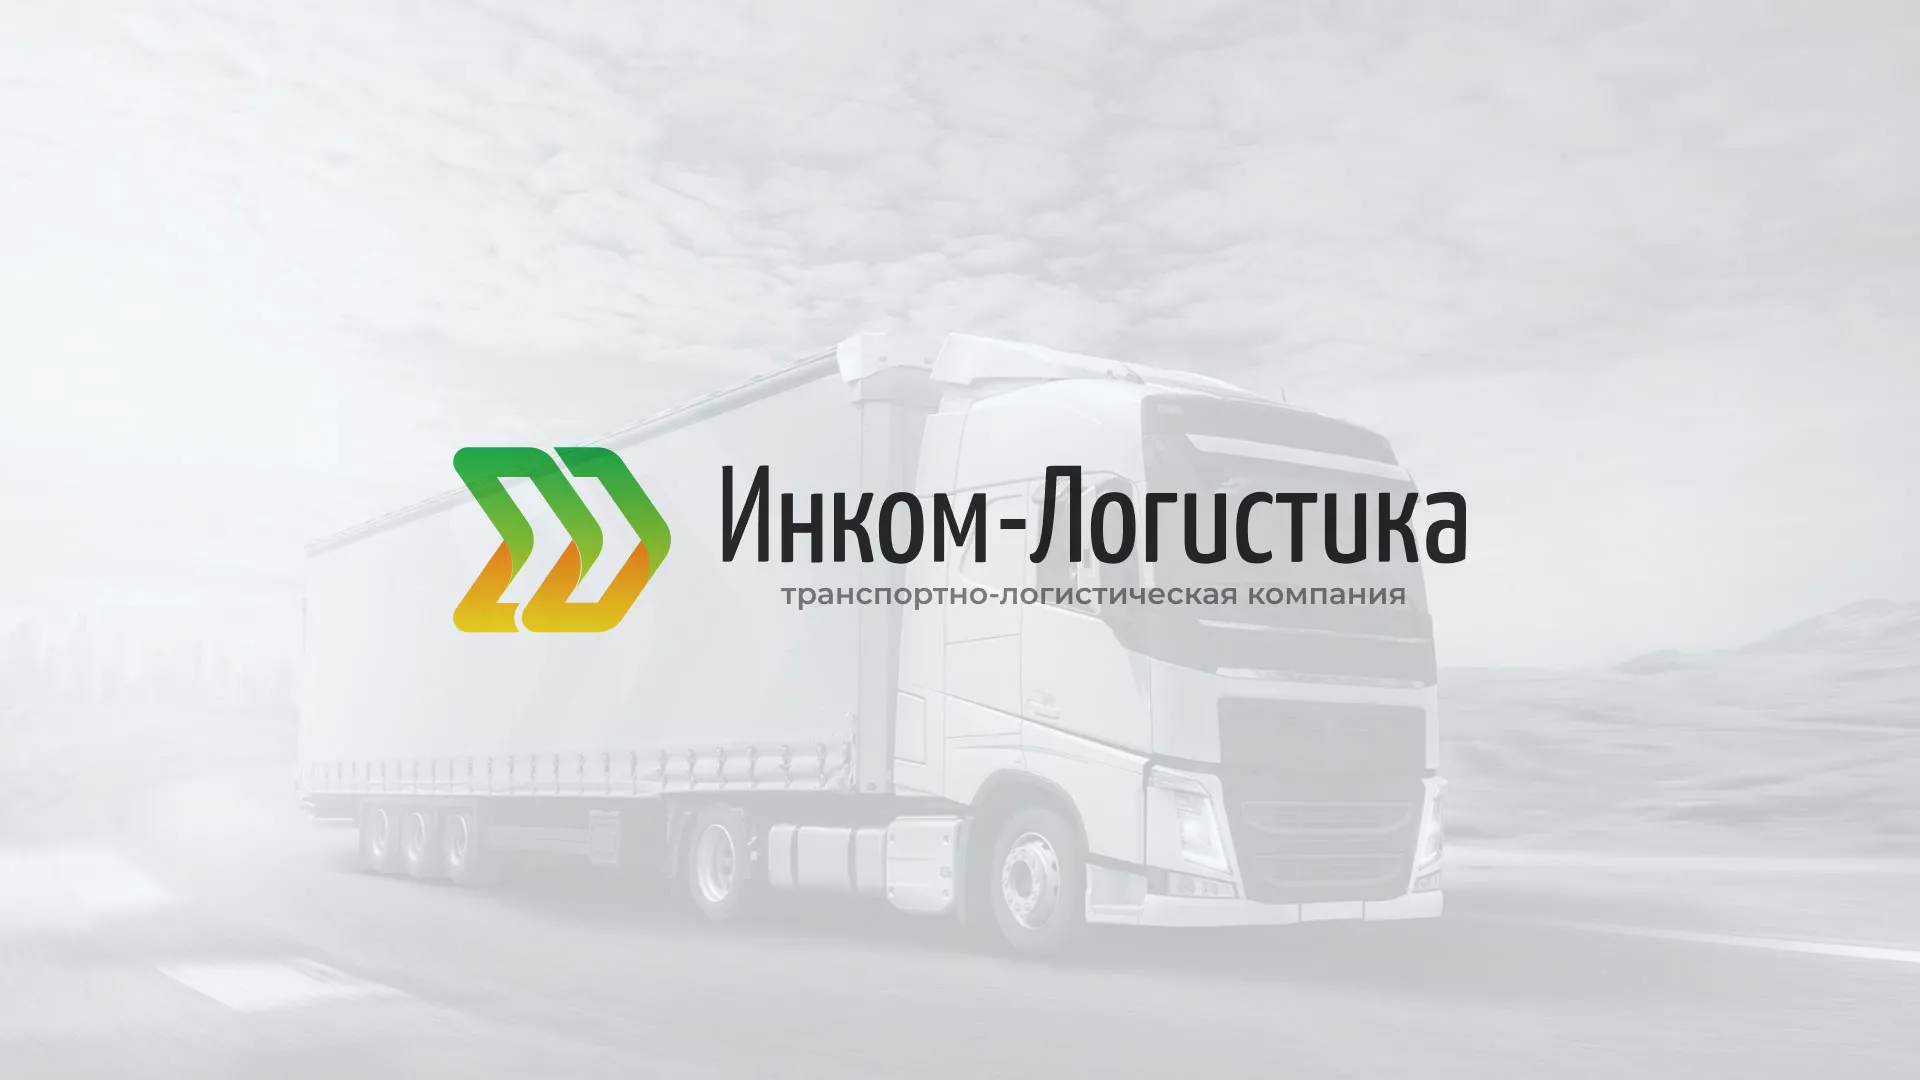 Разработка логотипа и сайта компании «Инком-Логистика» в Таганроге